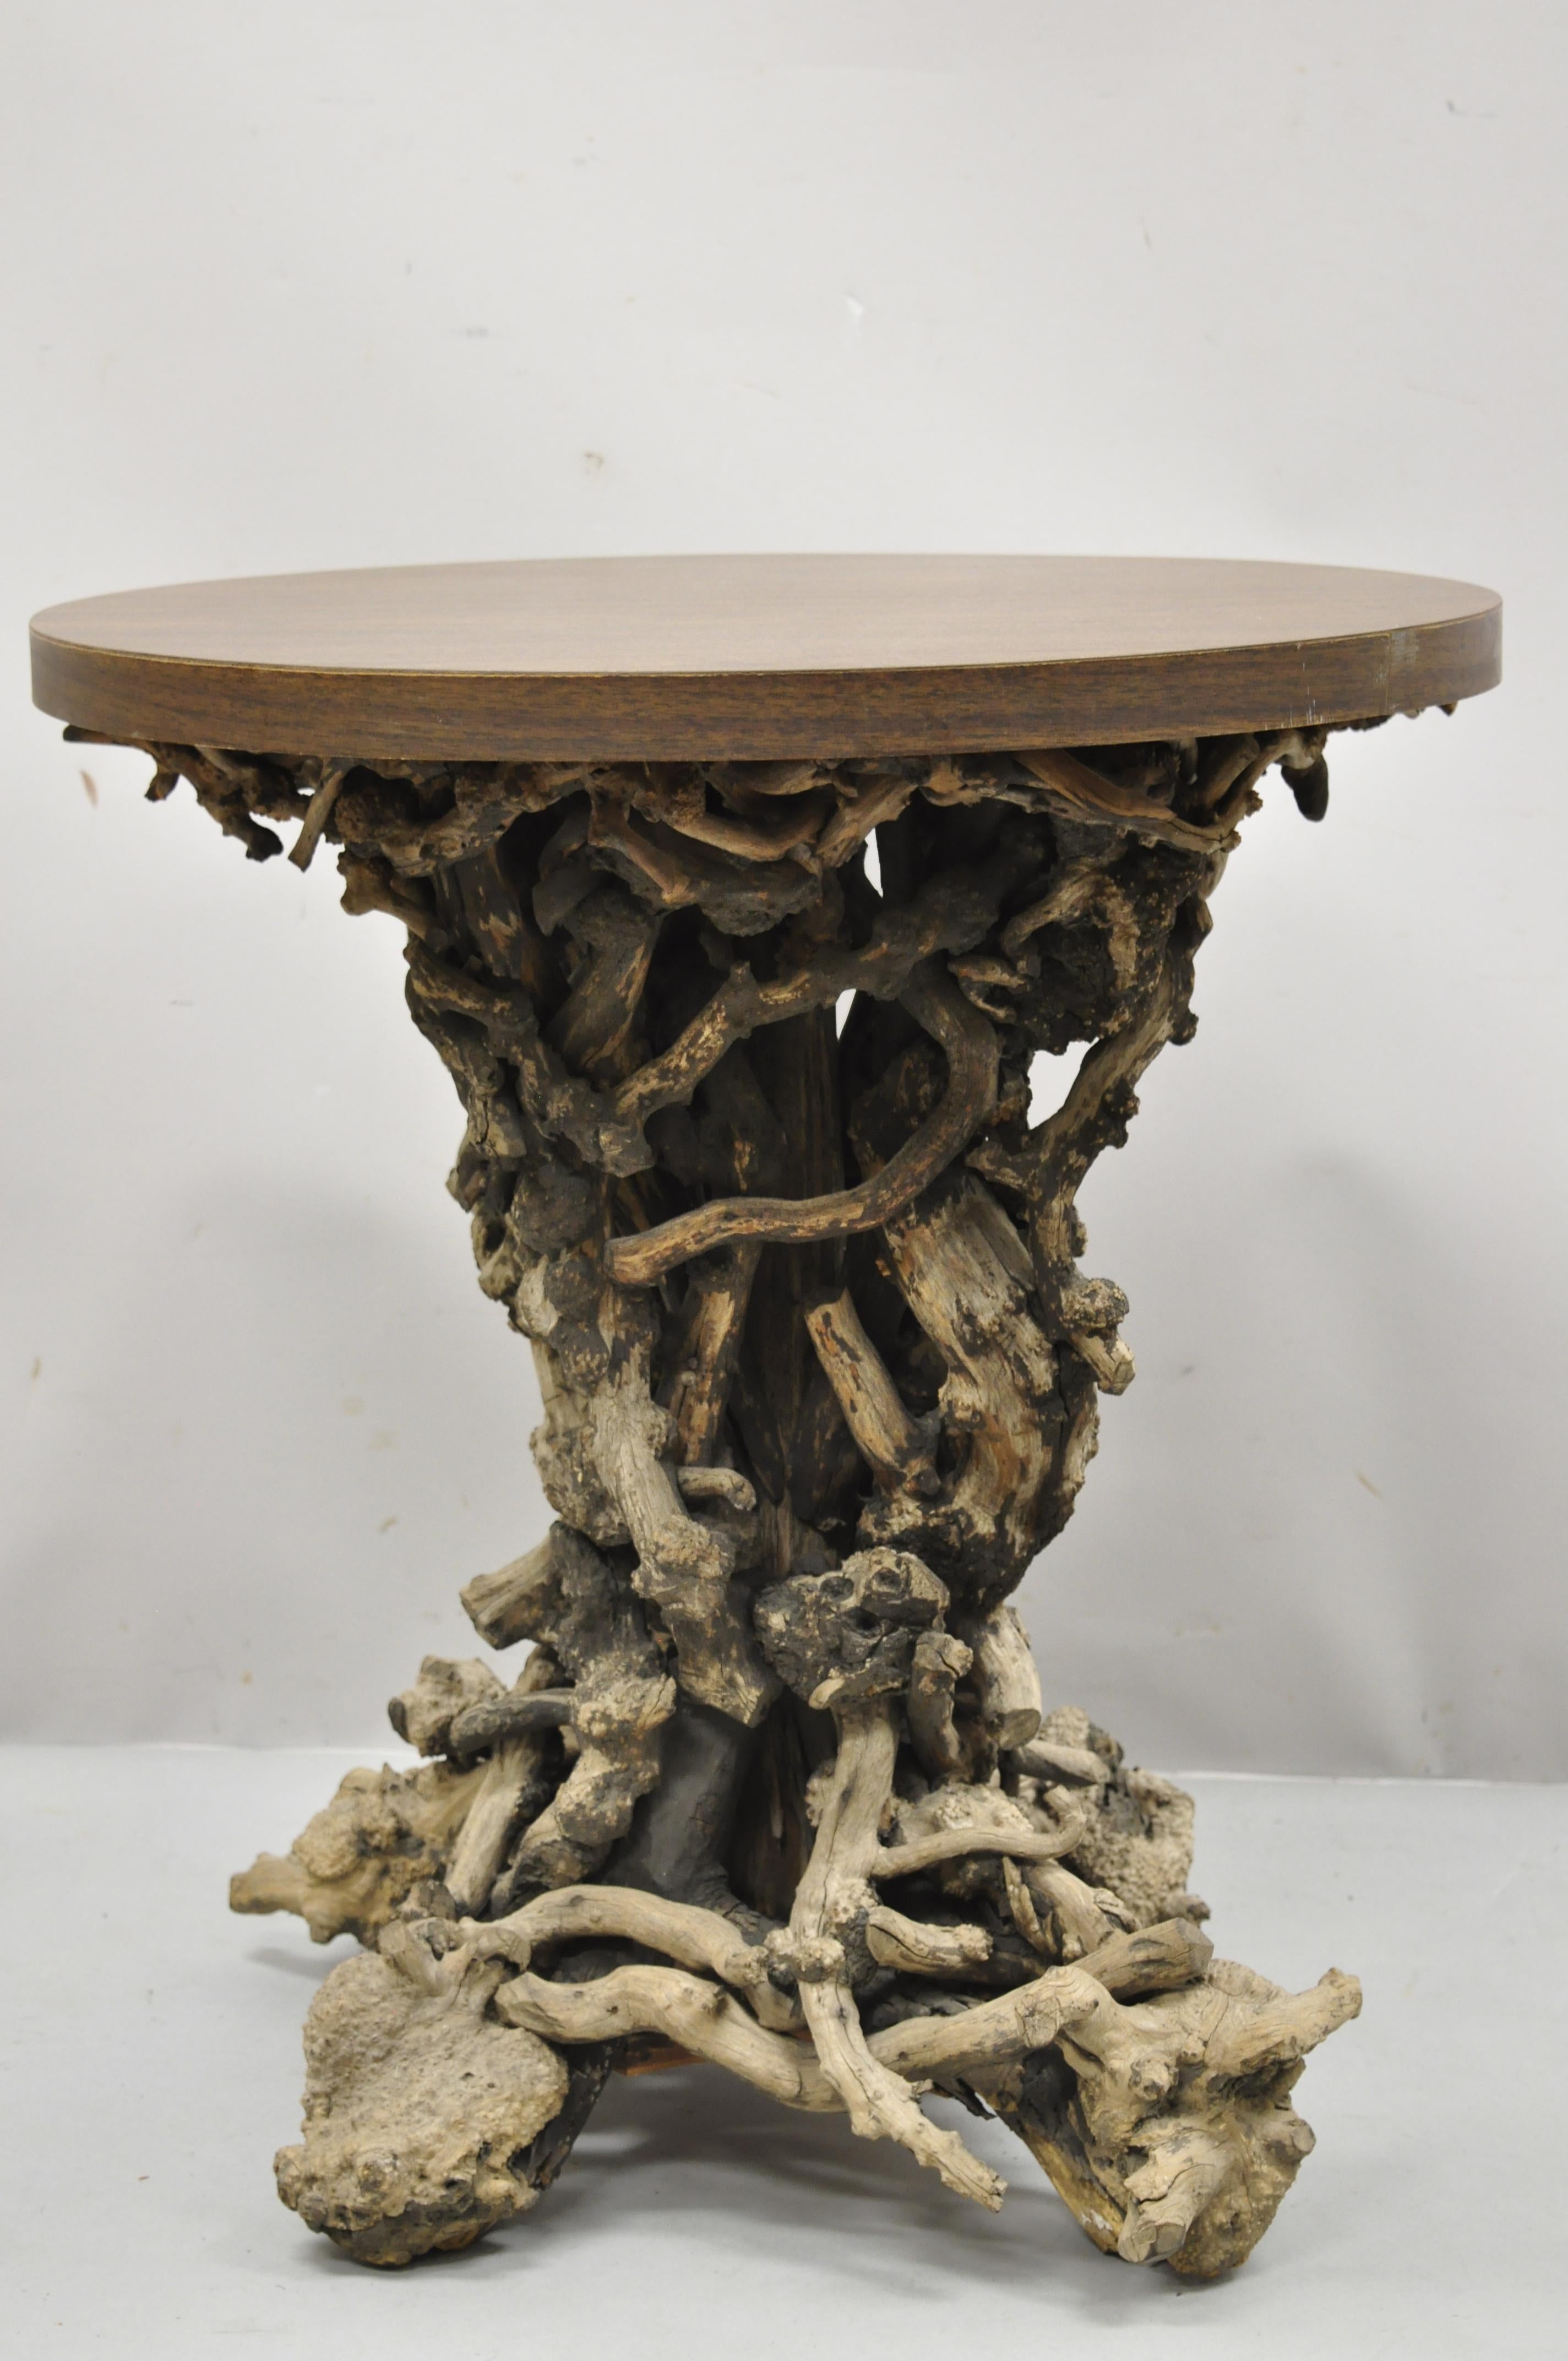 Vintage driftwood root base drift wood pedestal base naturaliste ronde accent side table. Cet article présente un plateau rond en stratifié et un socle en bois flotté de forme libre, un très bel article vintage, un style et une forme remarquables,